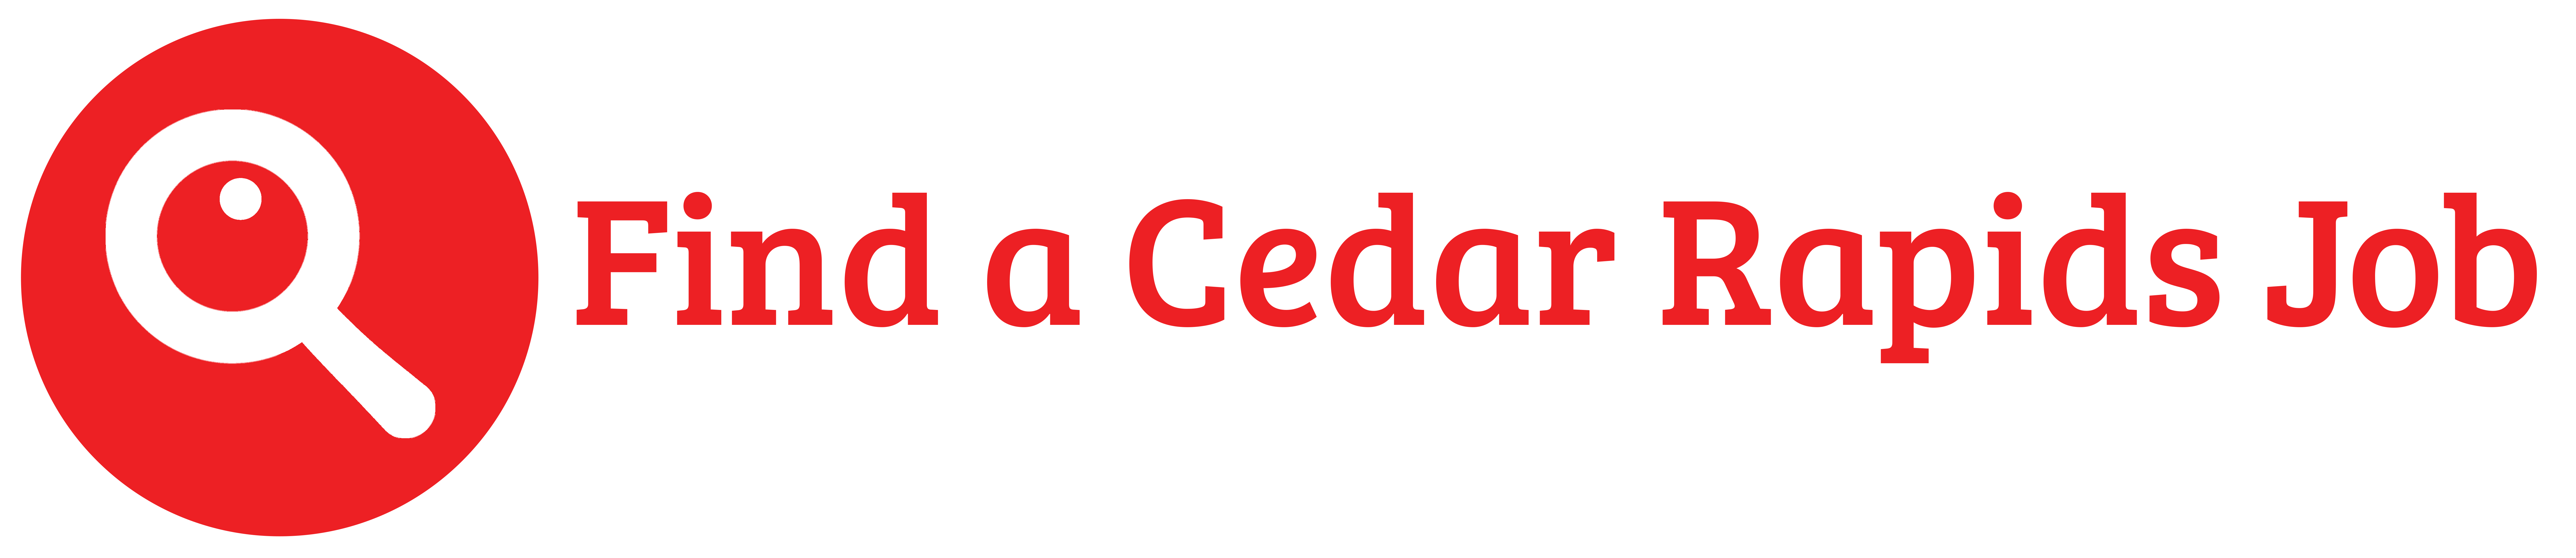 Find a Cedar Rapids Job